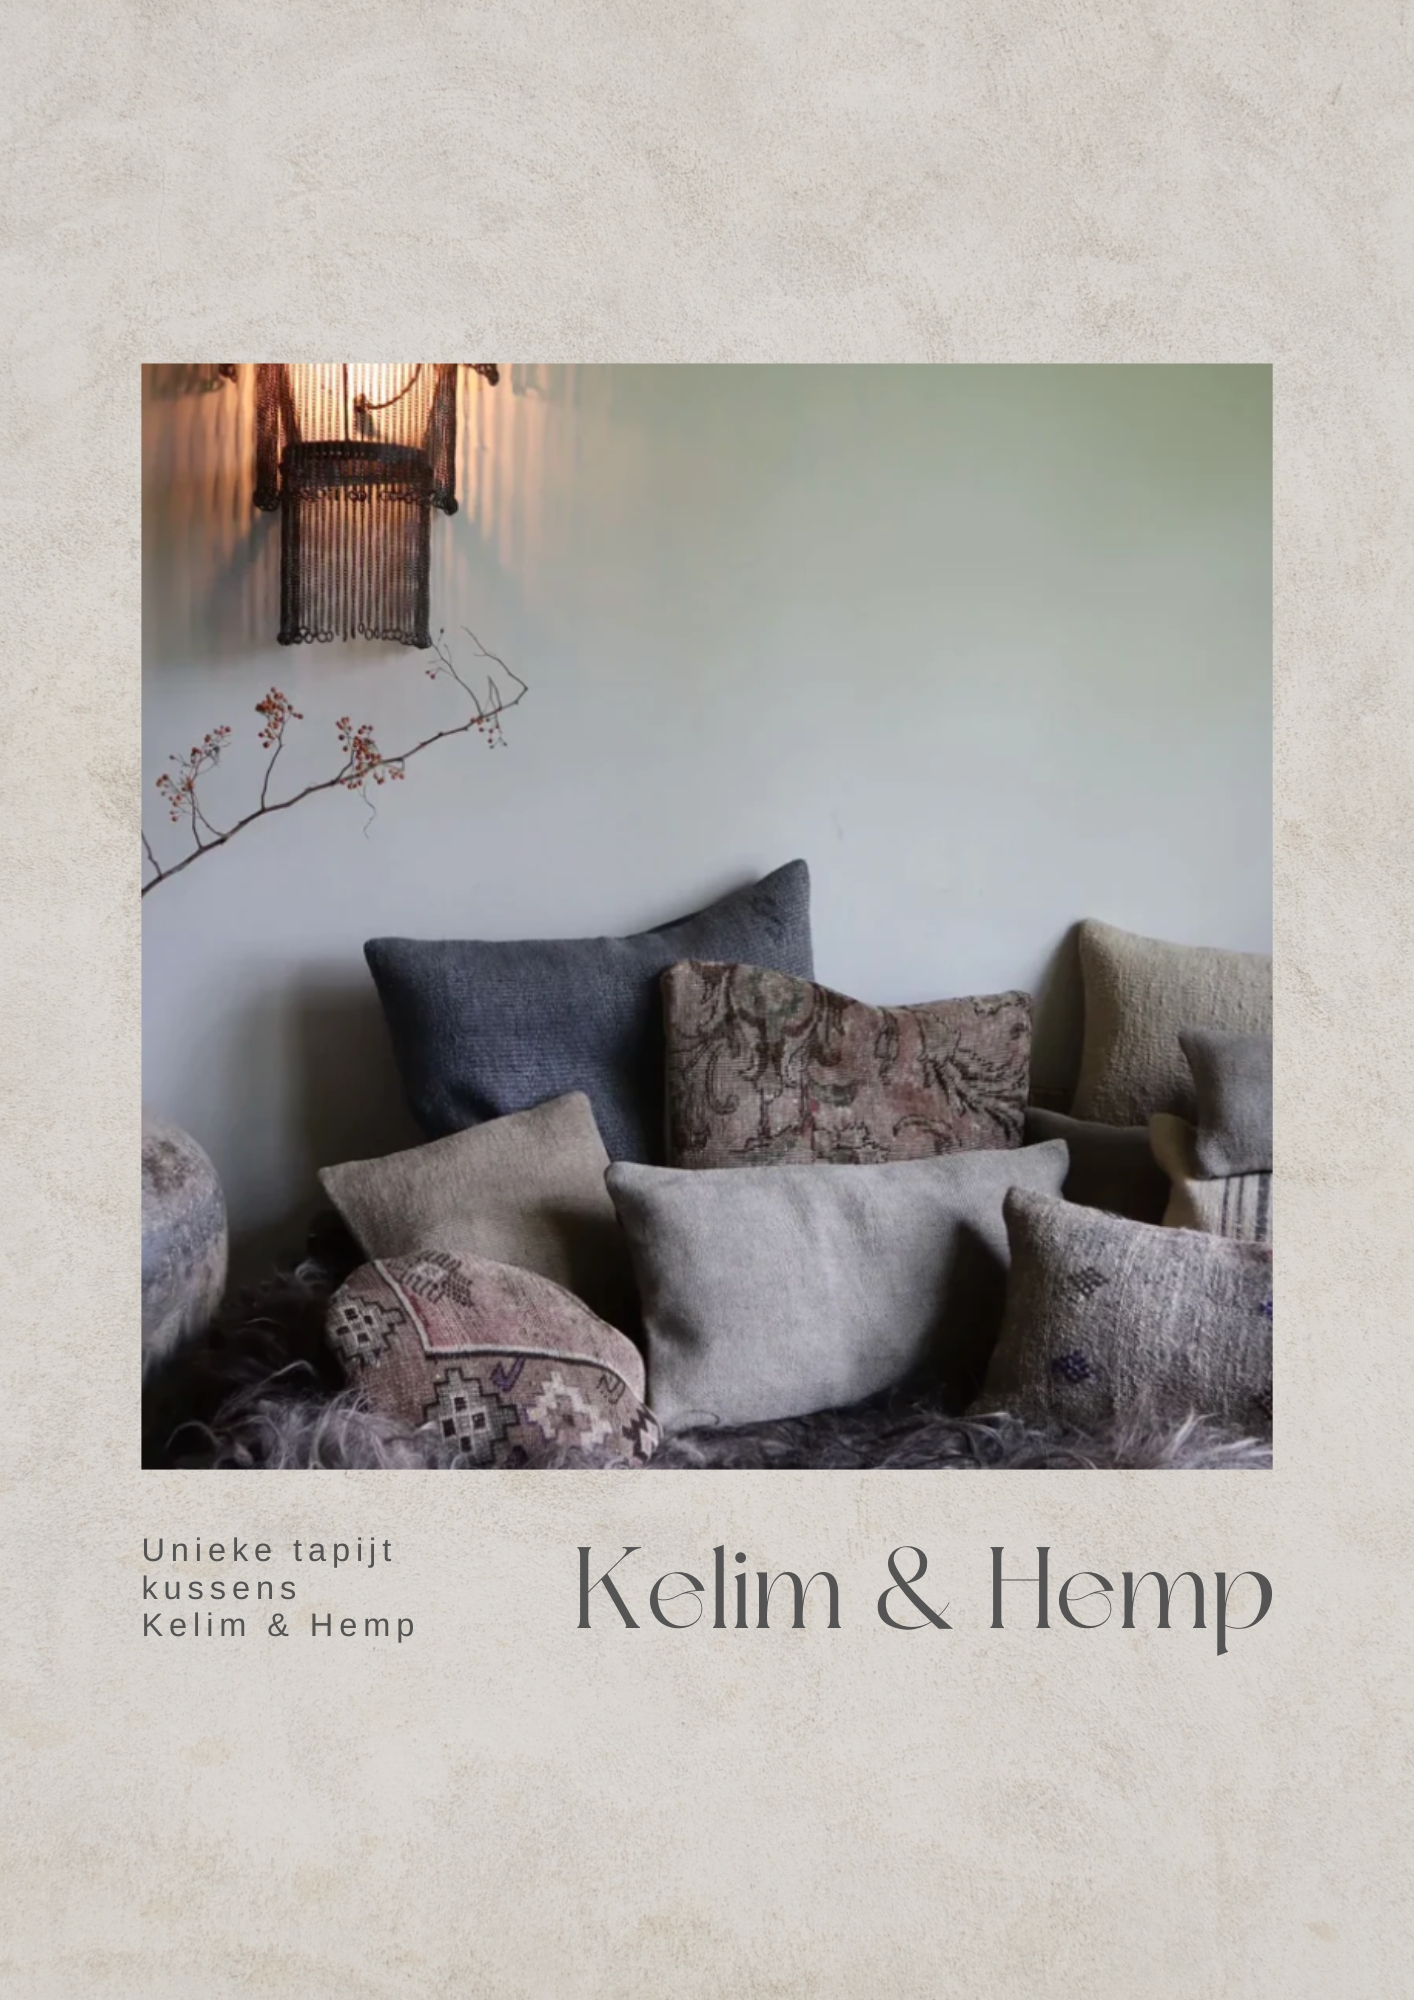 Kilim / Hemp cushions